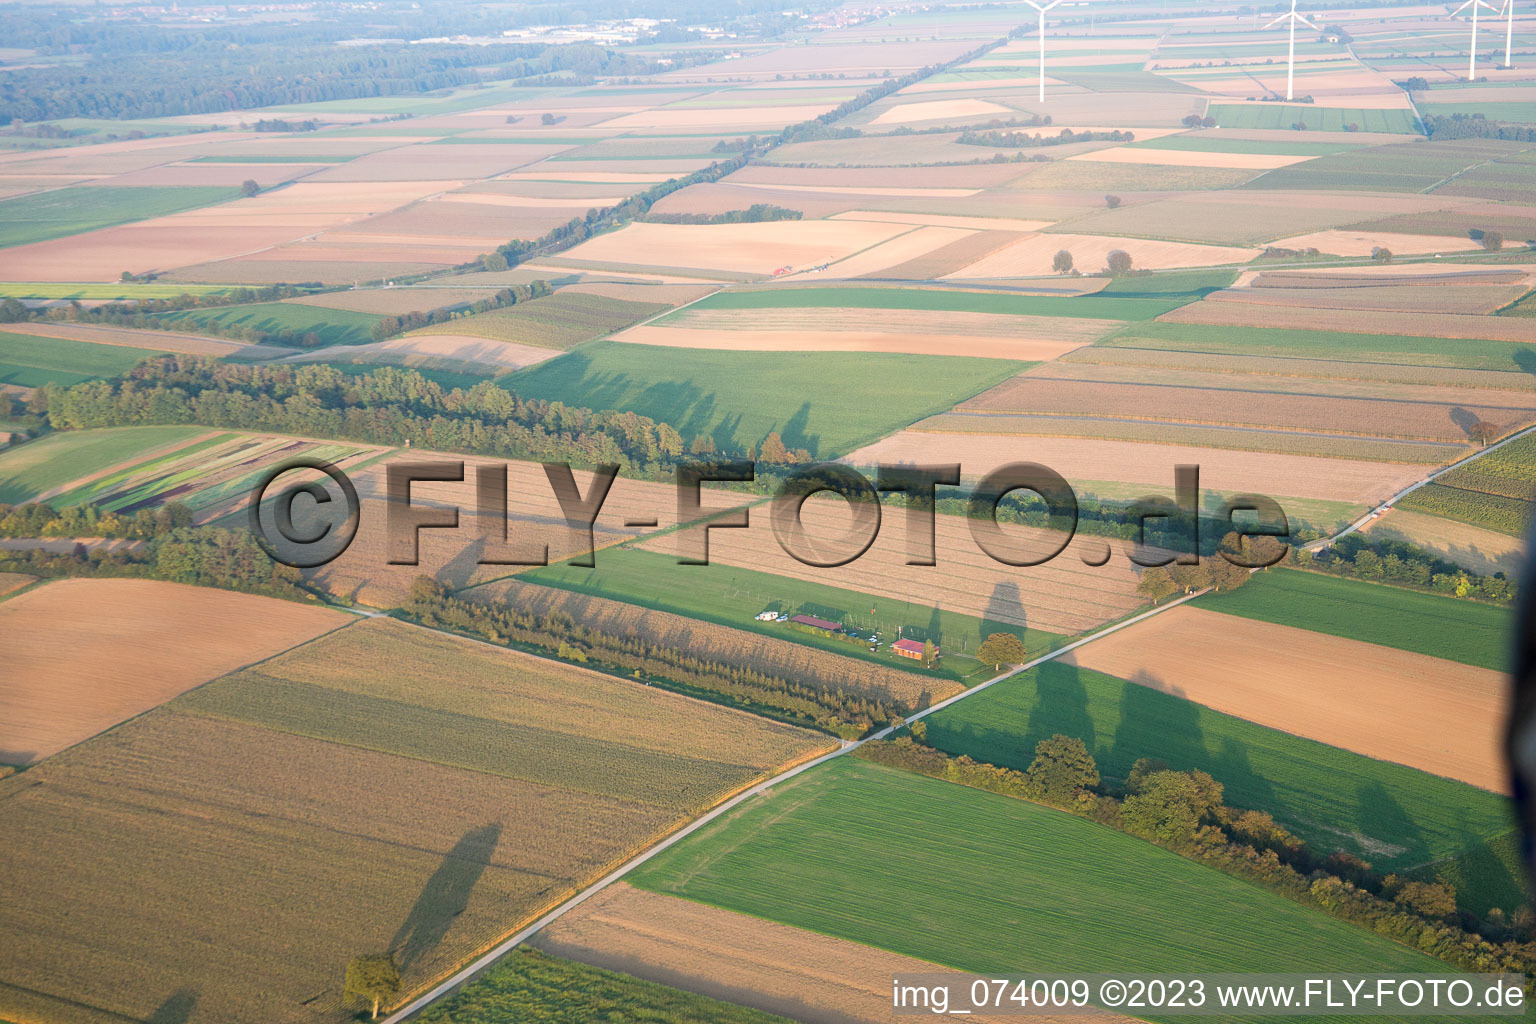 Vue aérienne de Aérodrome modèle à Freckenfeld dans le département Rhénanie-Palatinat, Allemagne